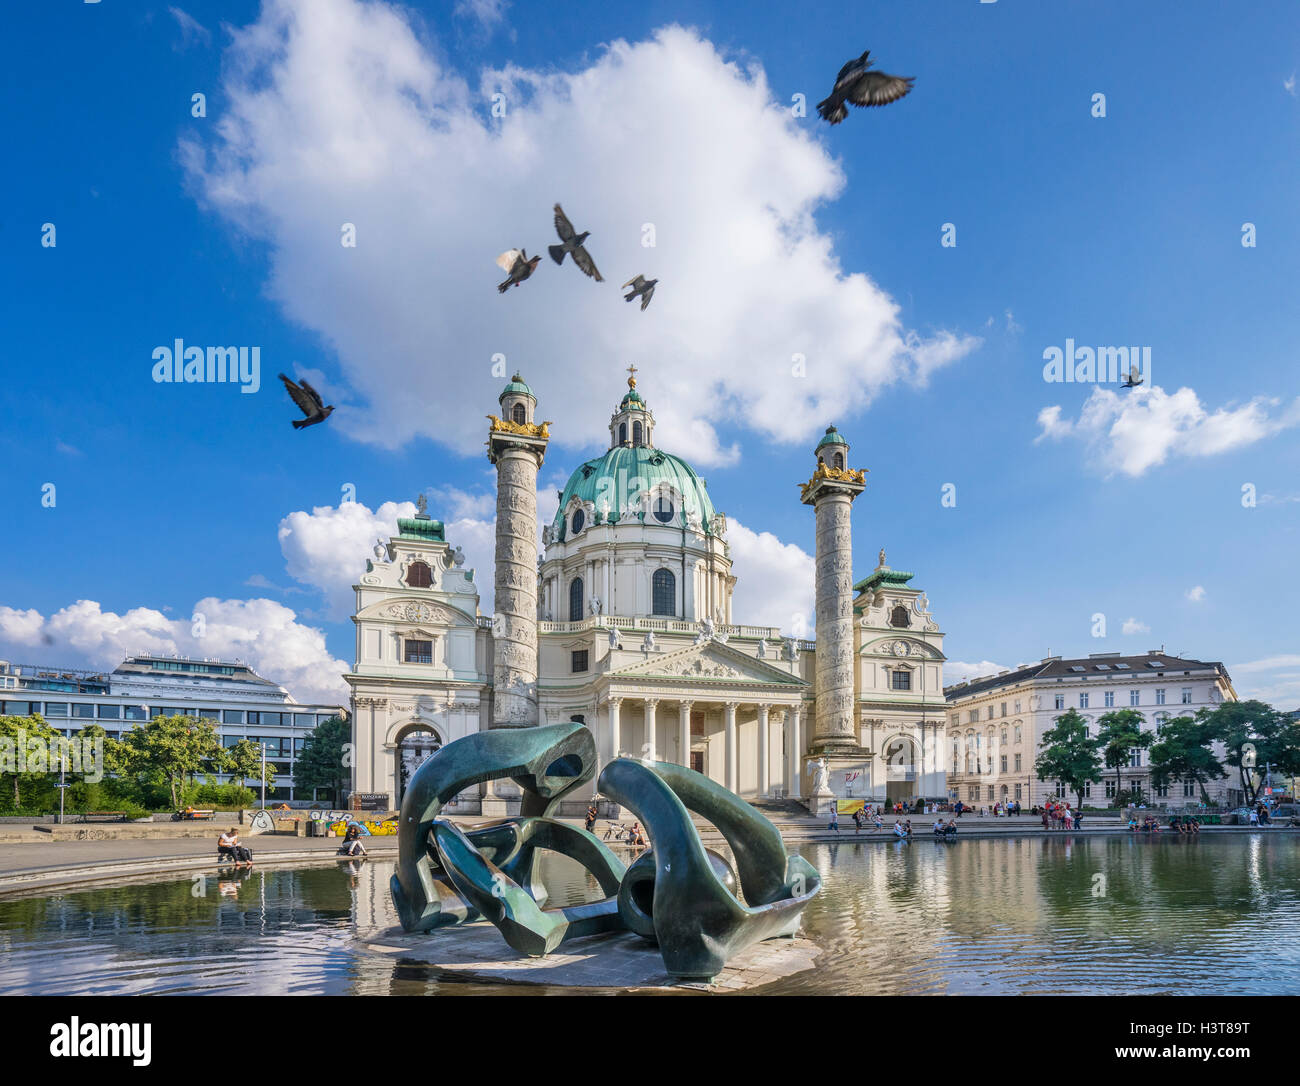 L'Autriche, Vienne, Karlsplatz, Henry Moore sculpture dans l'eau chauffée à la Karlskirche (baroque St. Charles's Church) Banque D'Images